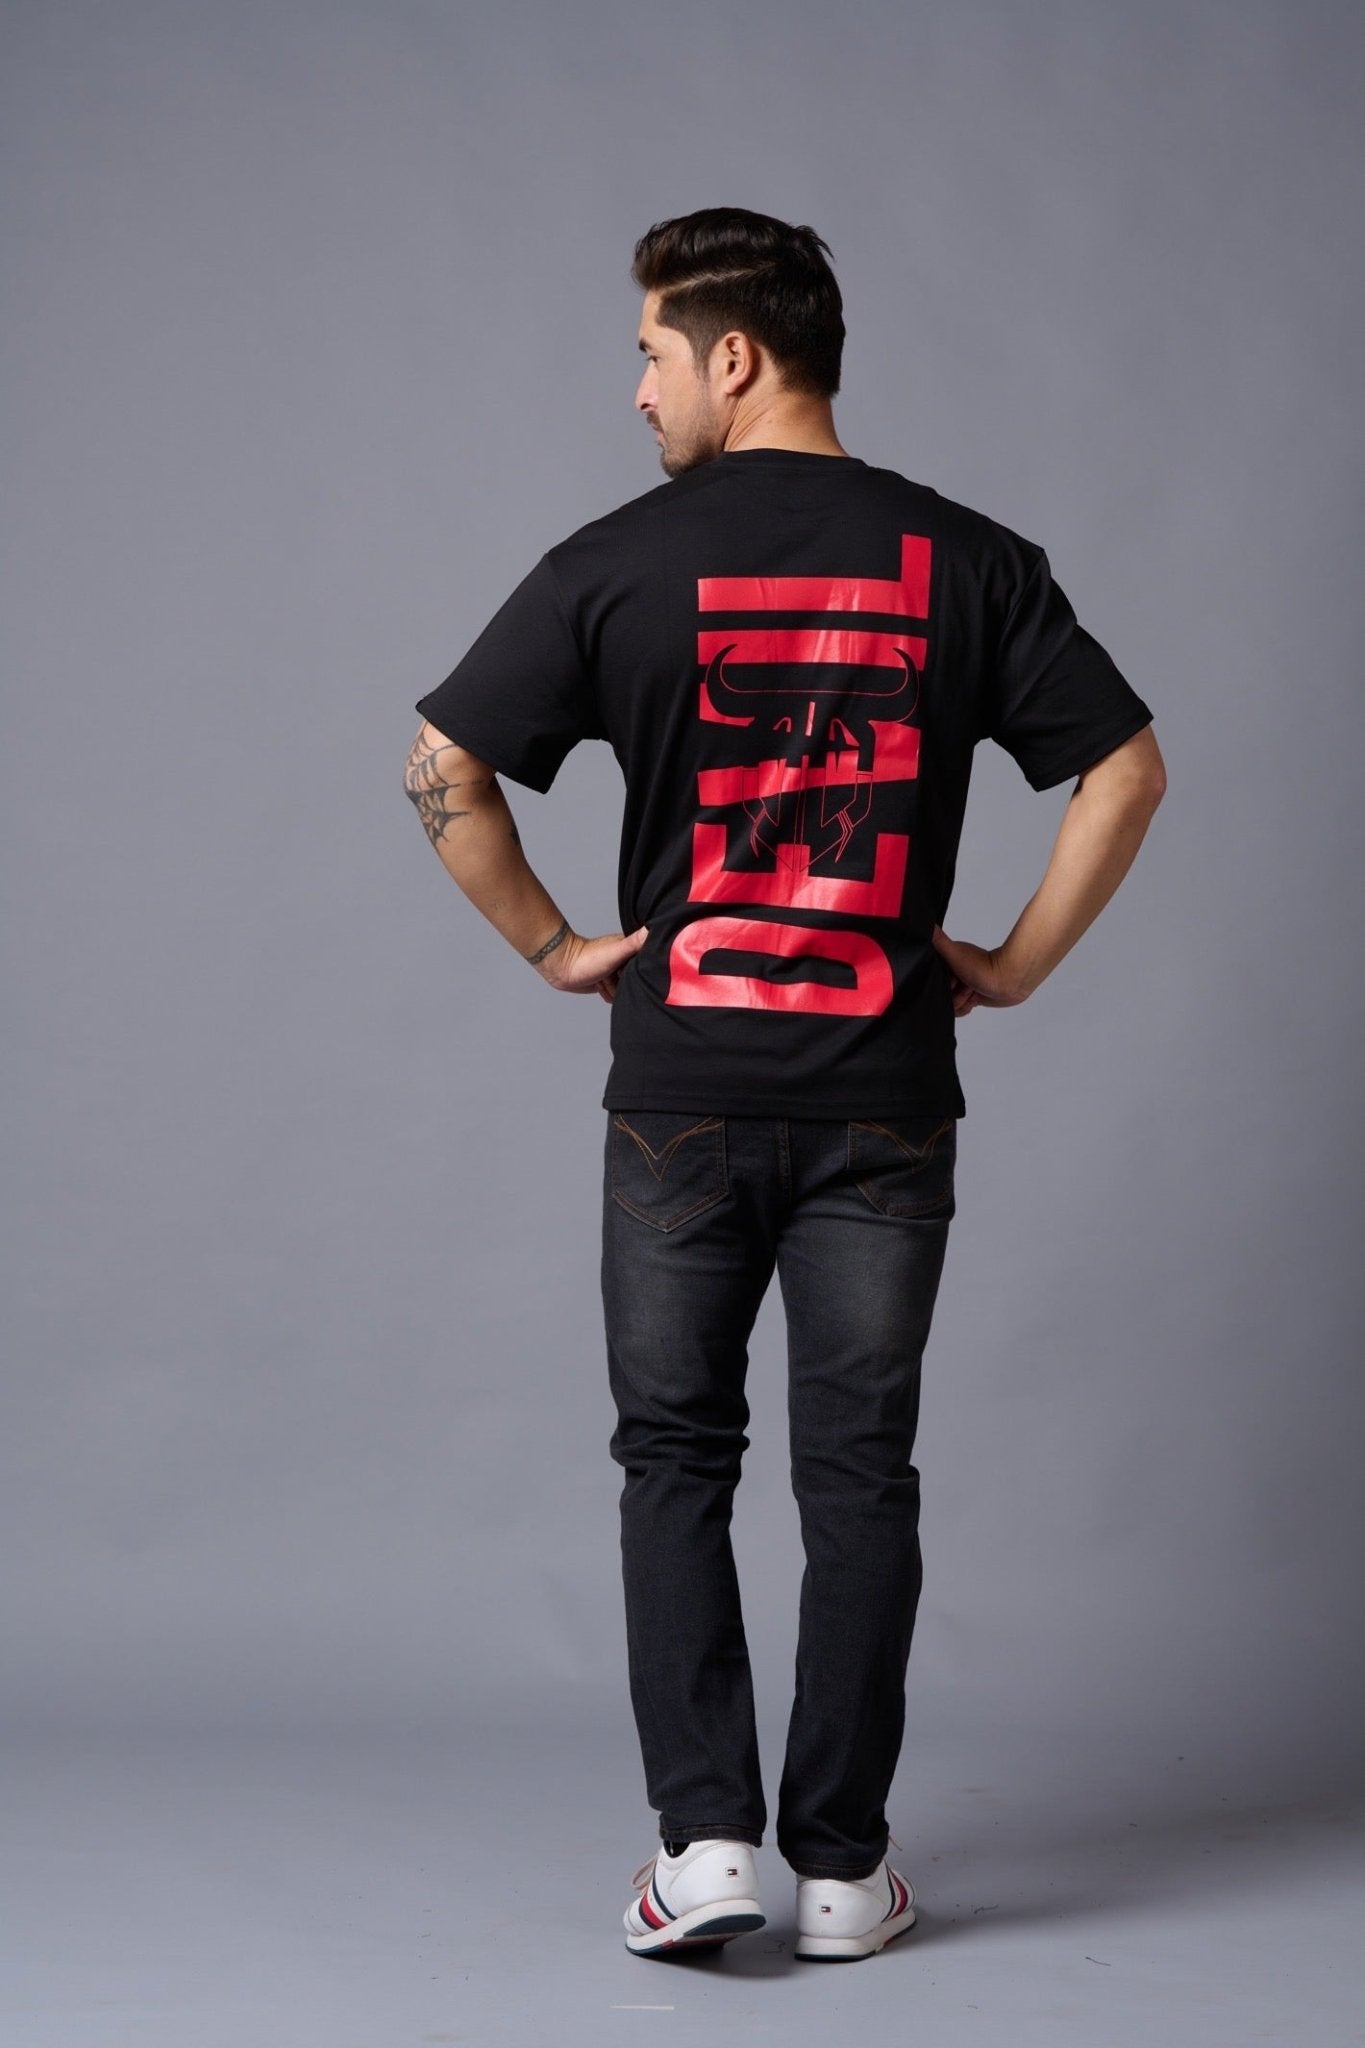 Red Devil Printed Black Oversized T-Shirt for Men - Go Devil